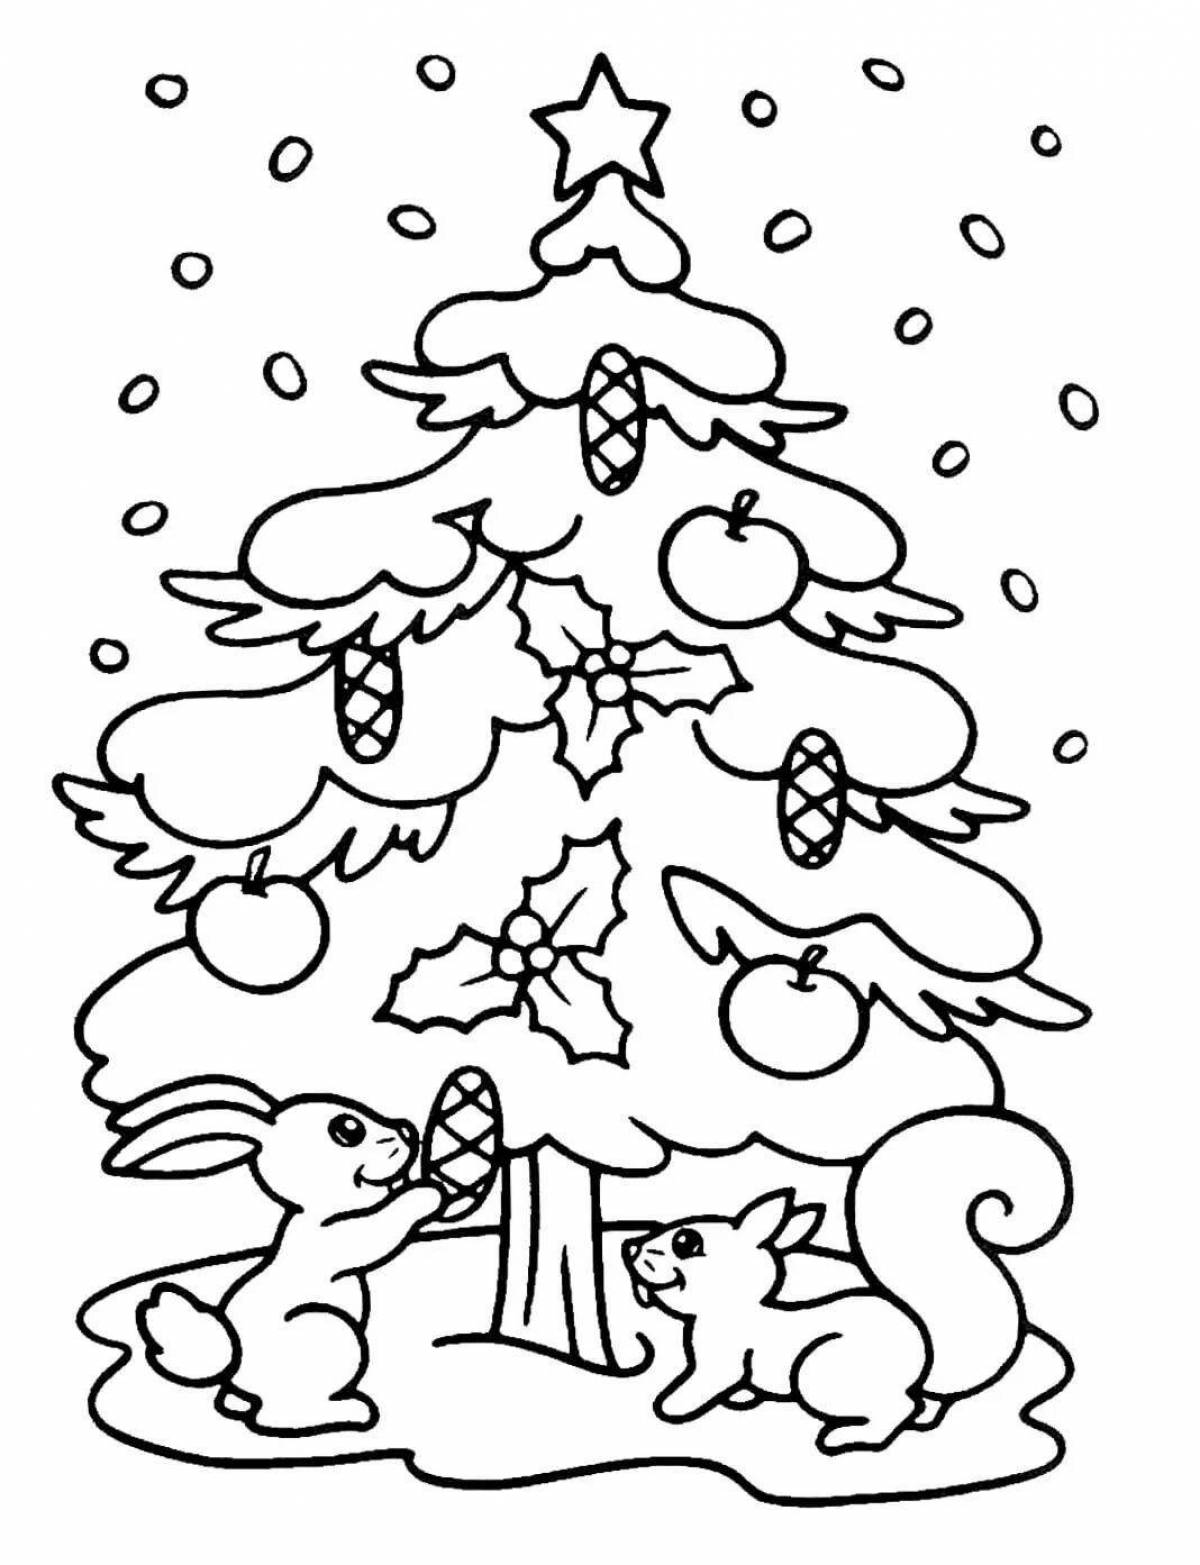 Playful Christmas tree drawing for kids